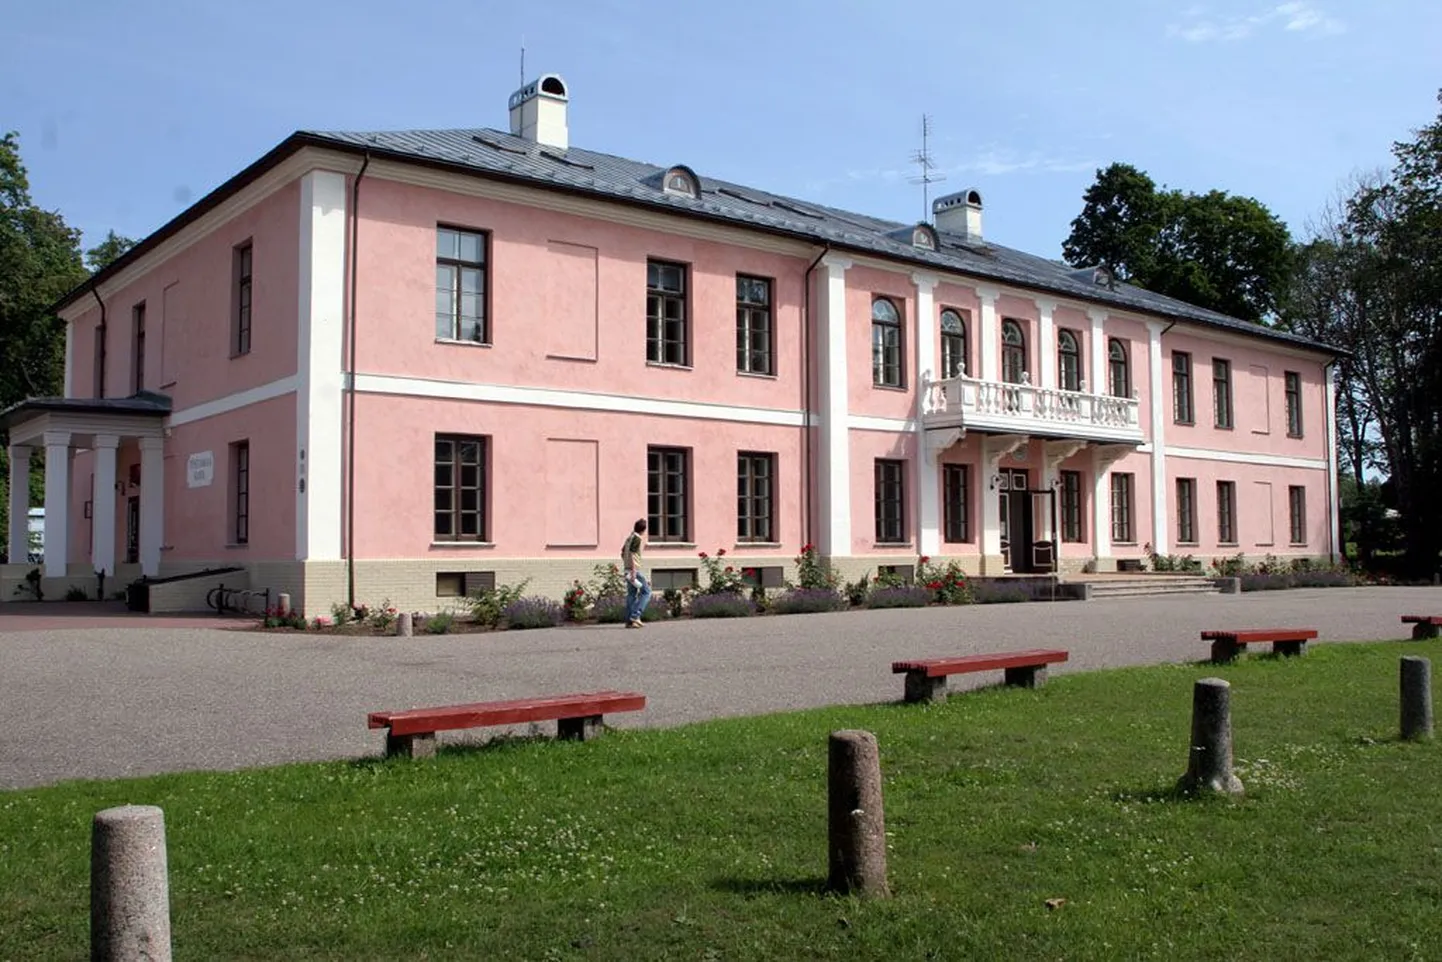 Pärnumaal toimub külastusmäng kolmes mõisas, teiste hulgas pildil olevas Tõstamaa mõisas.